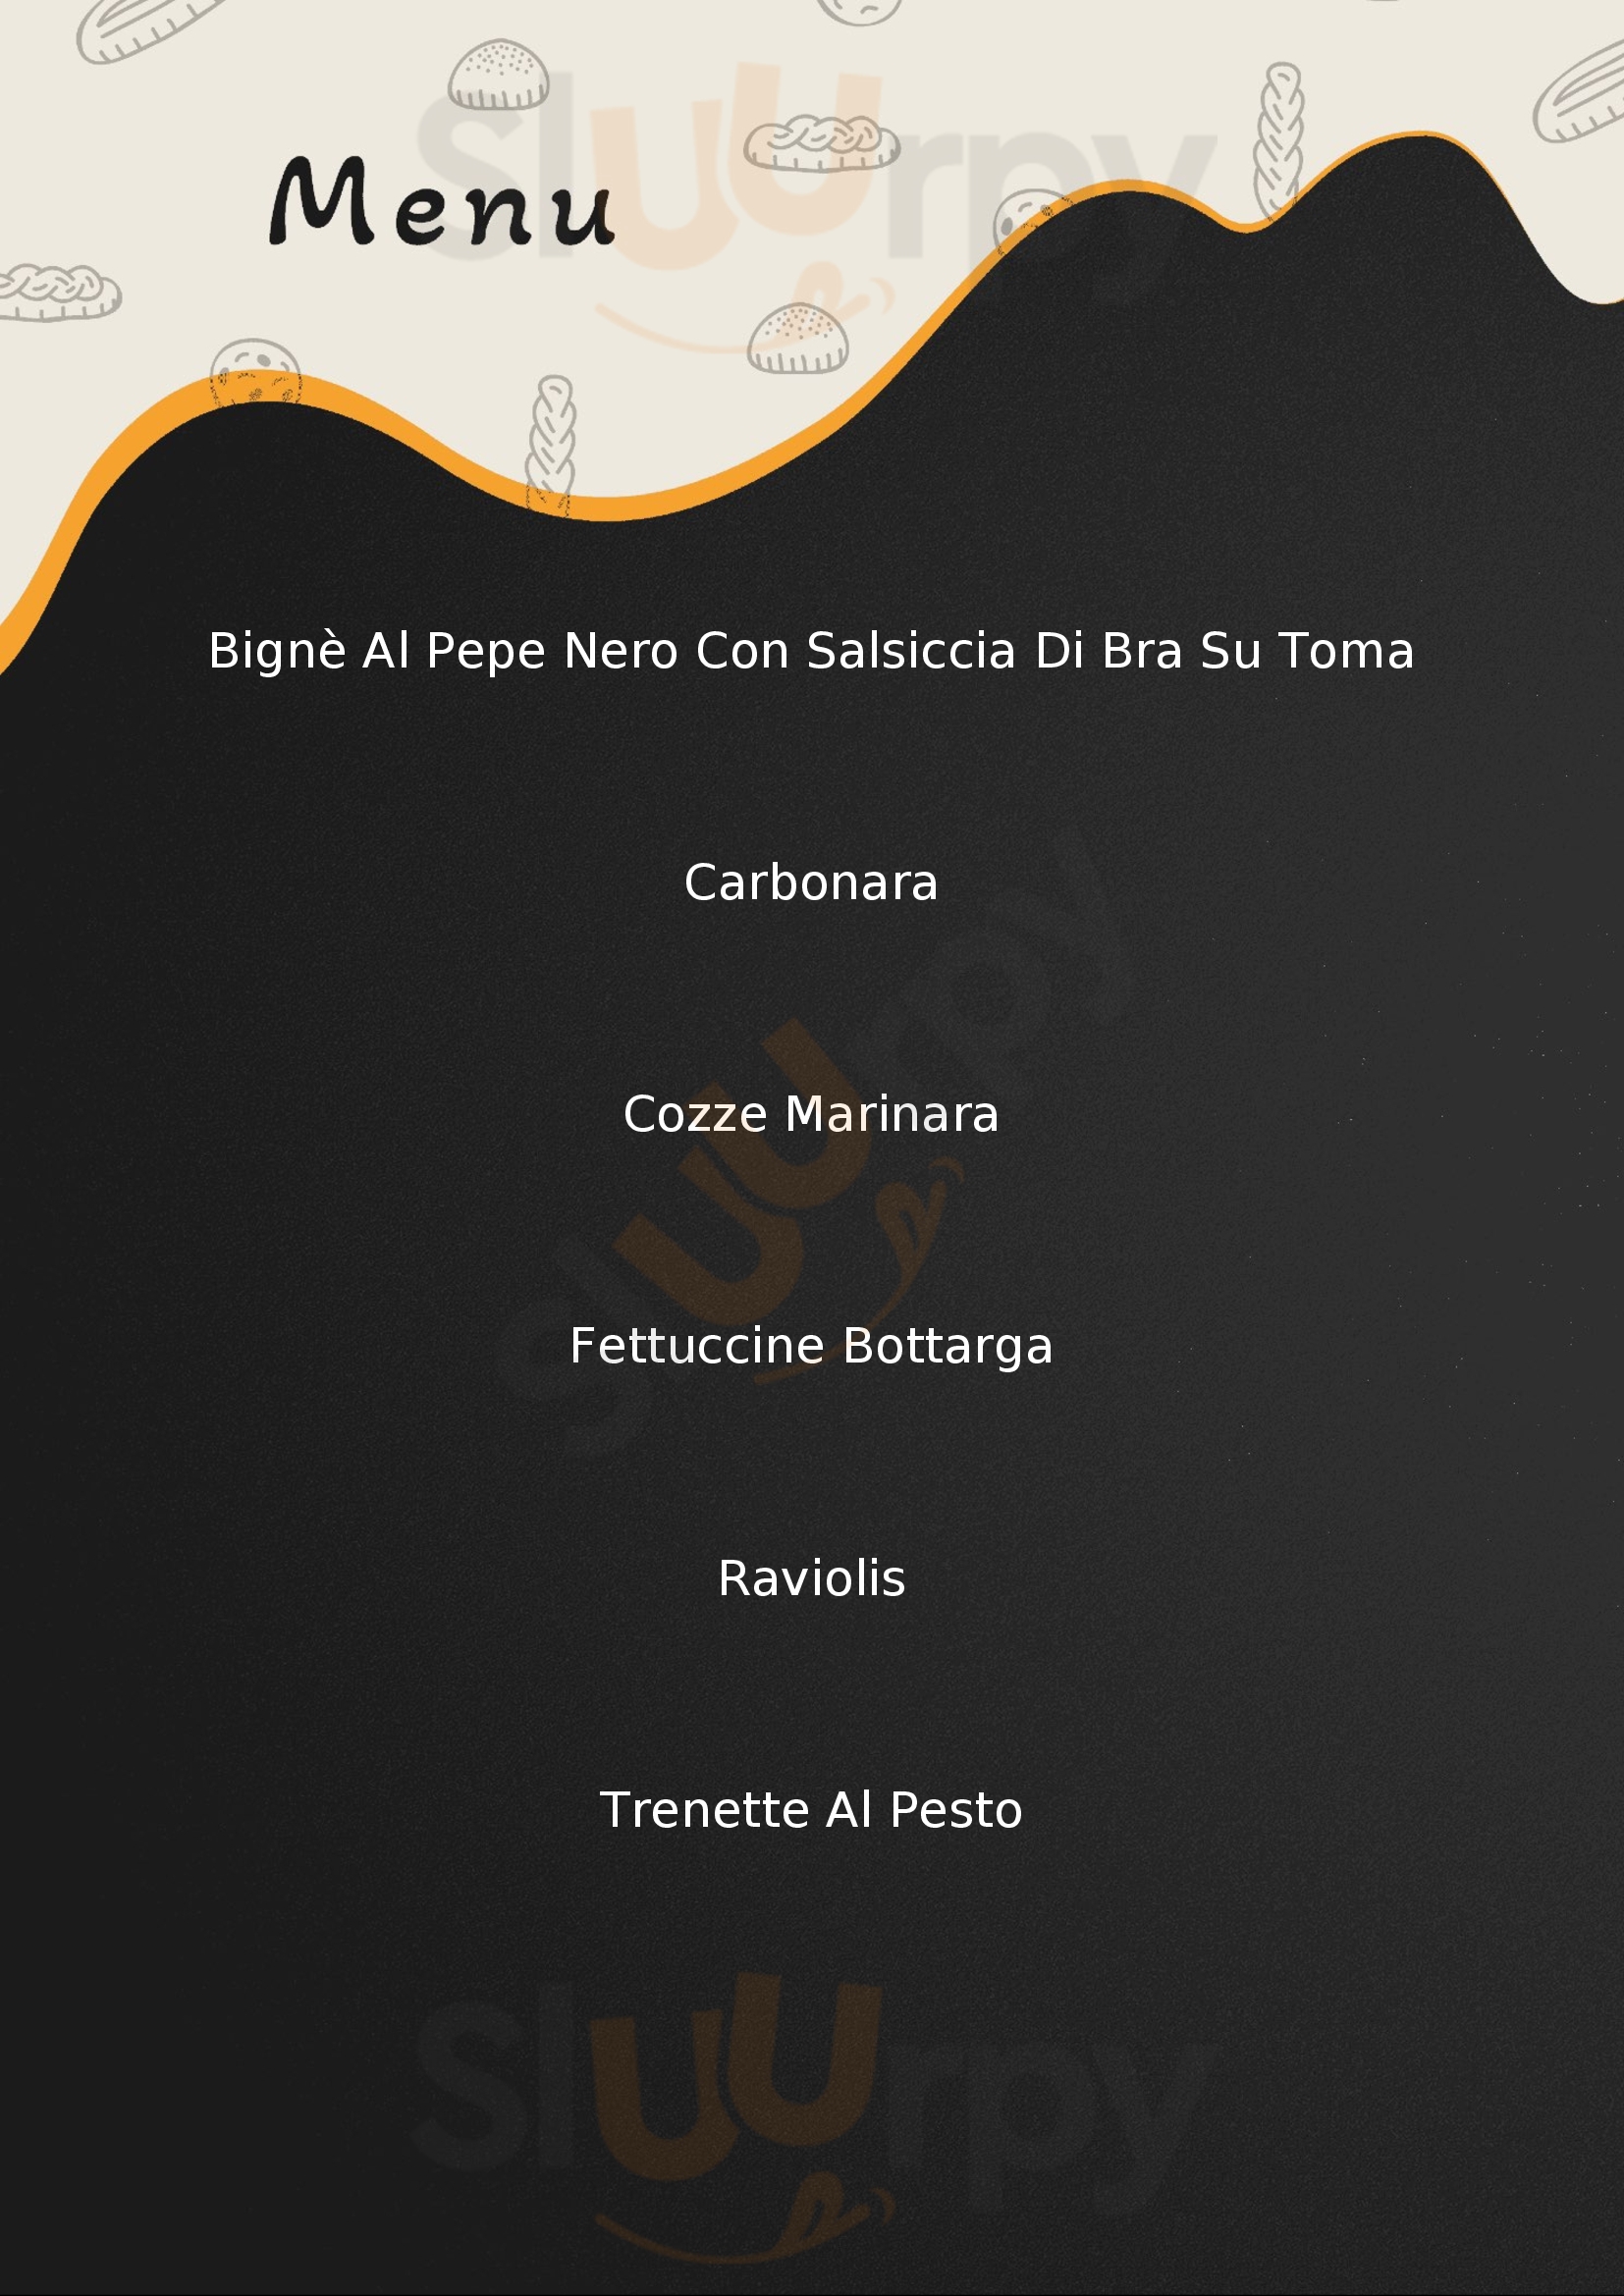 Ai Torchi 2.0 Sanremo menù 1 pagina